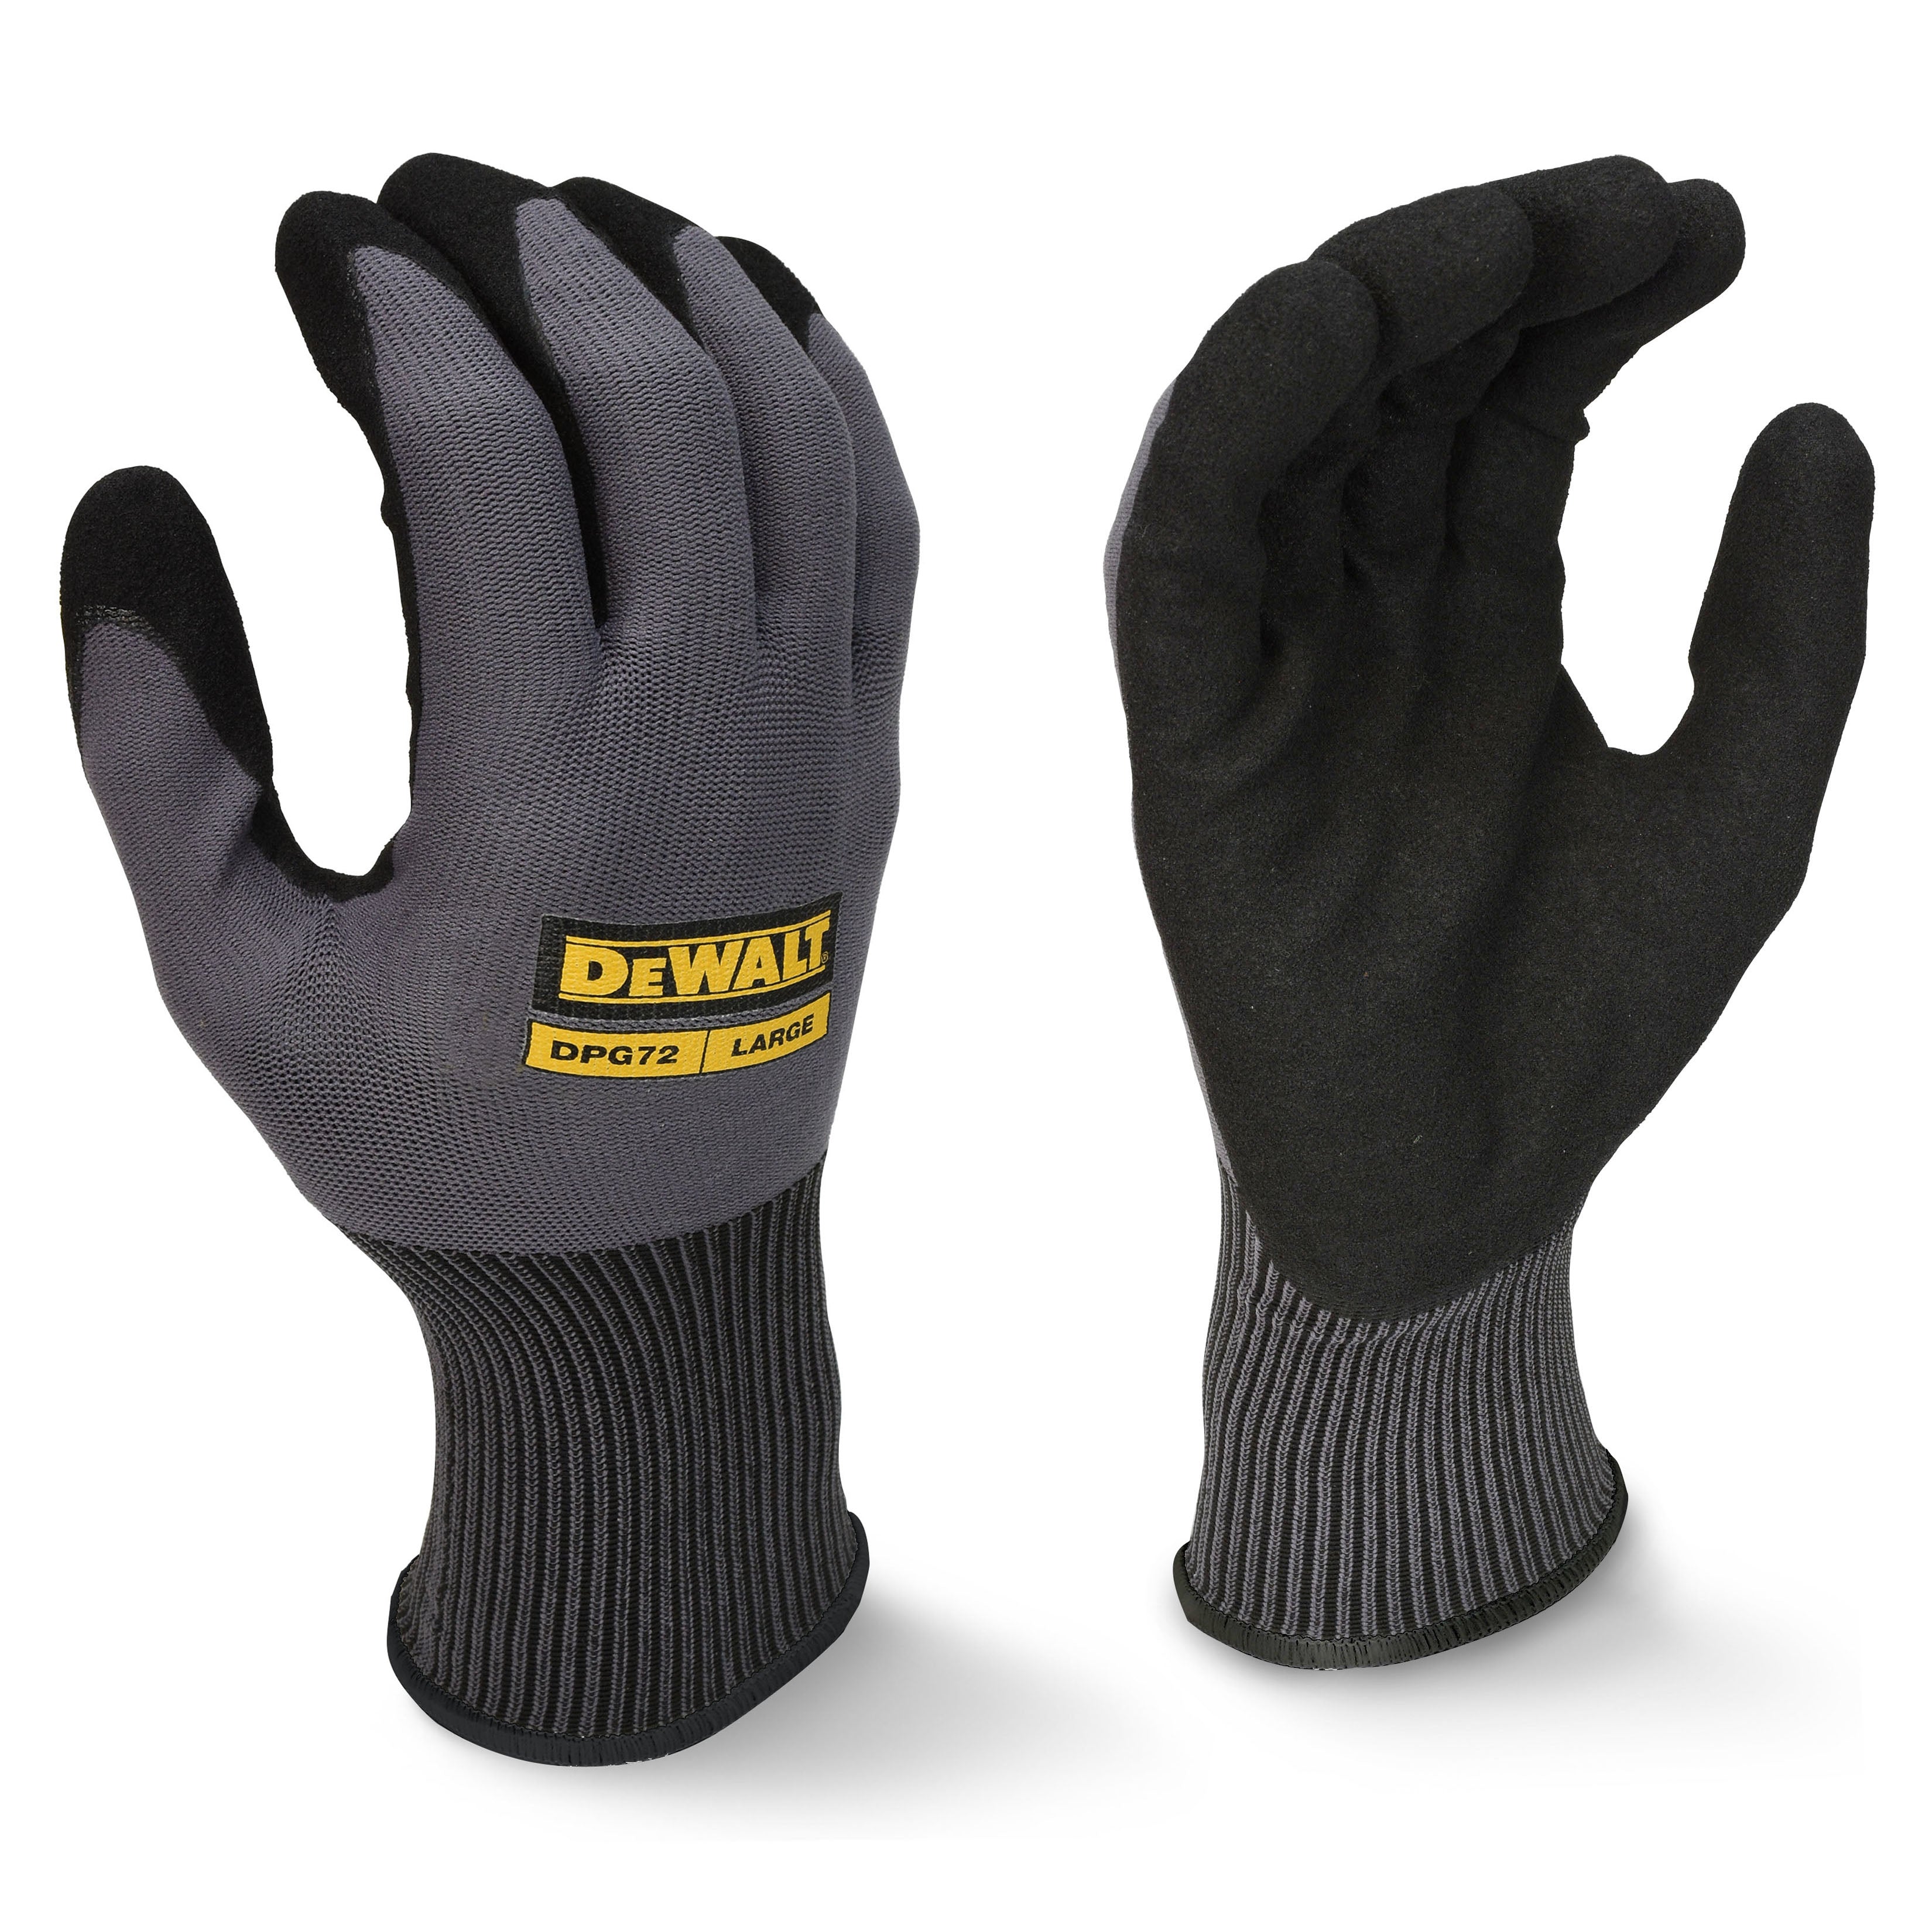 DEWALT DPG72 Flexible Durable Grip Work Glove-eSafety Supplies, Inc